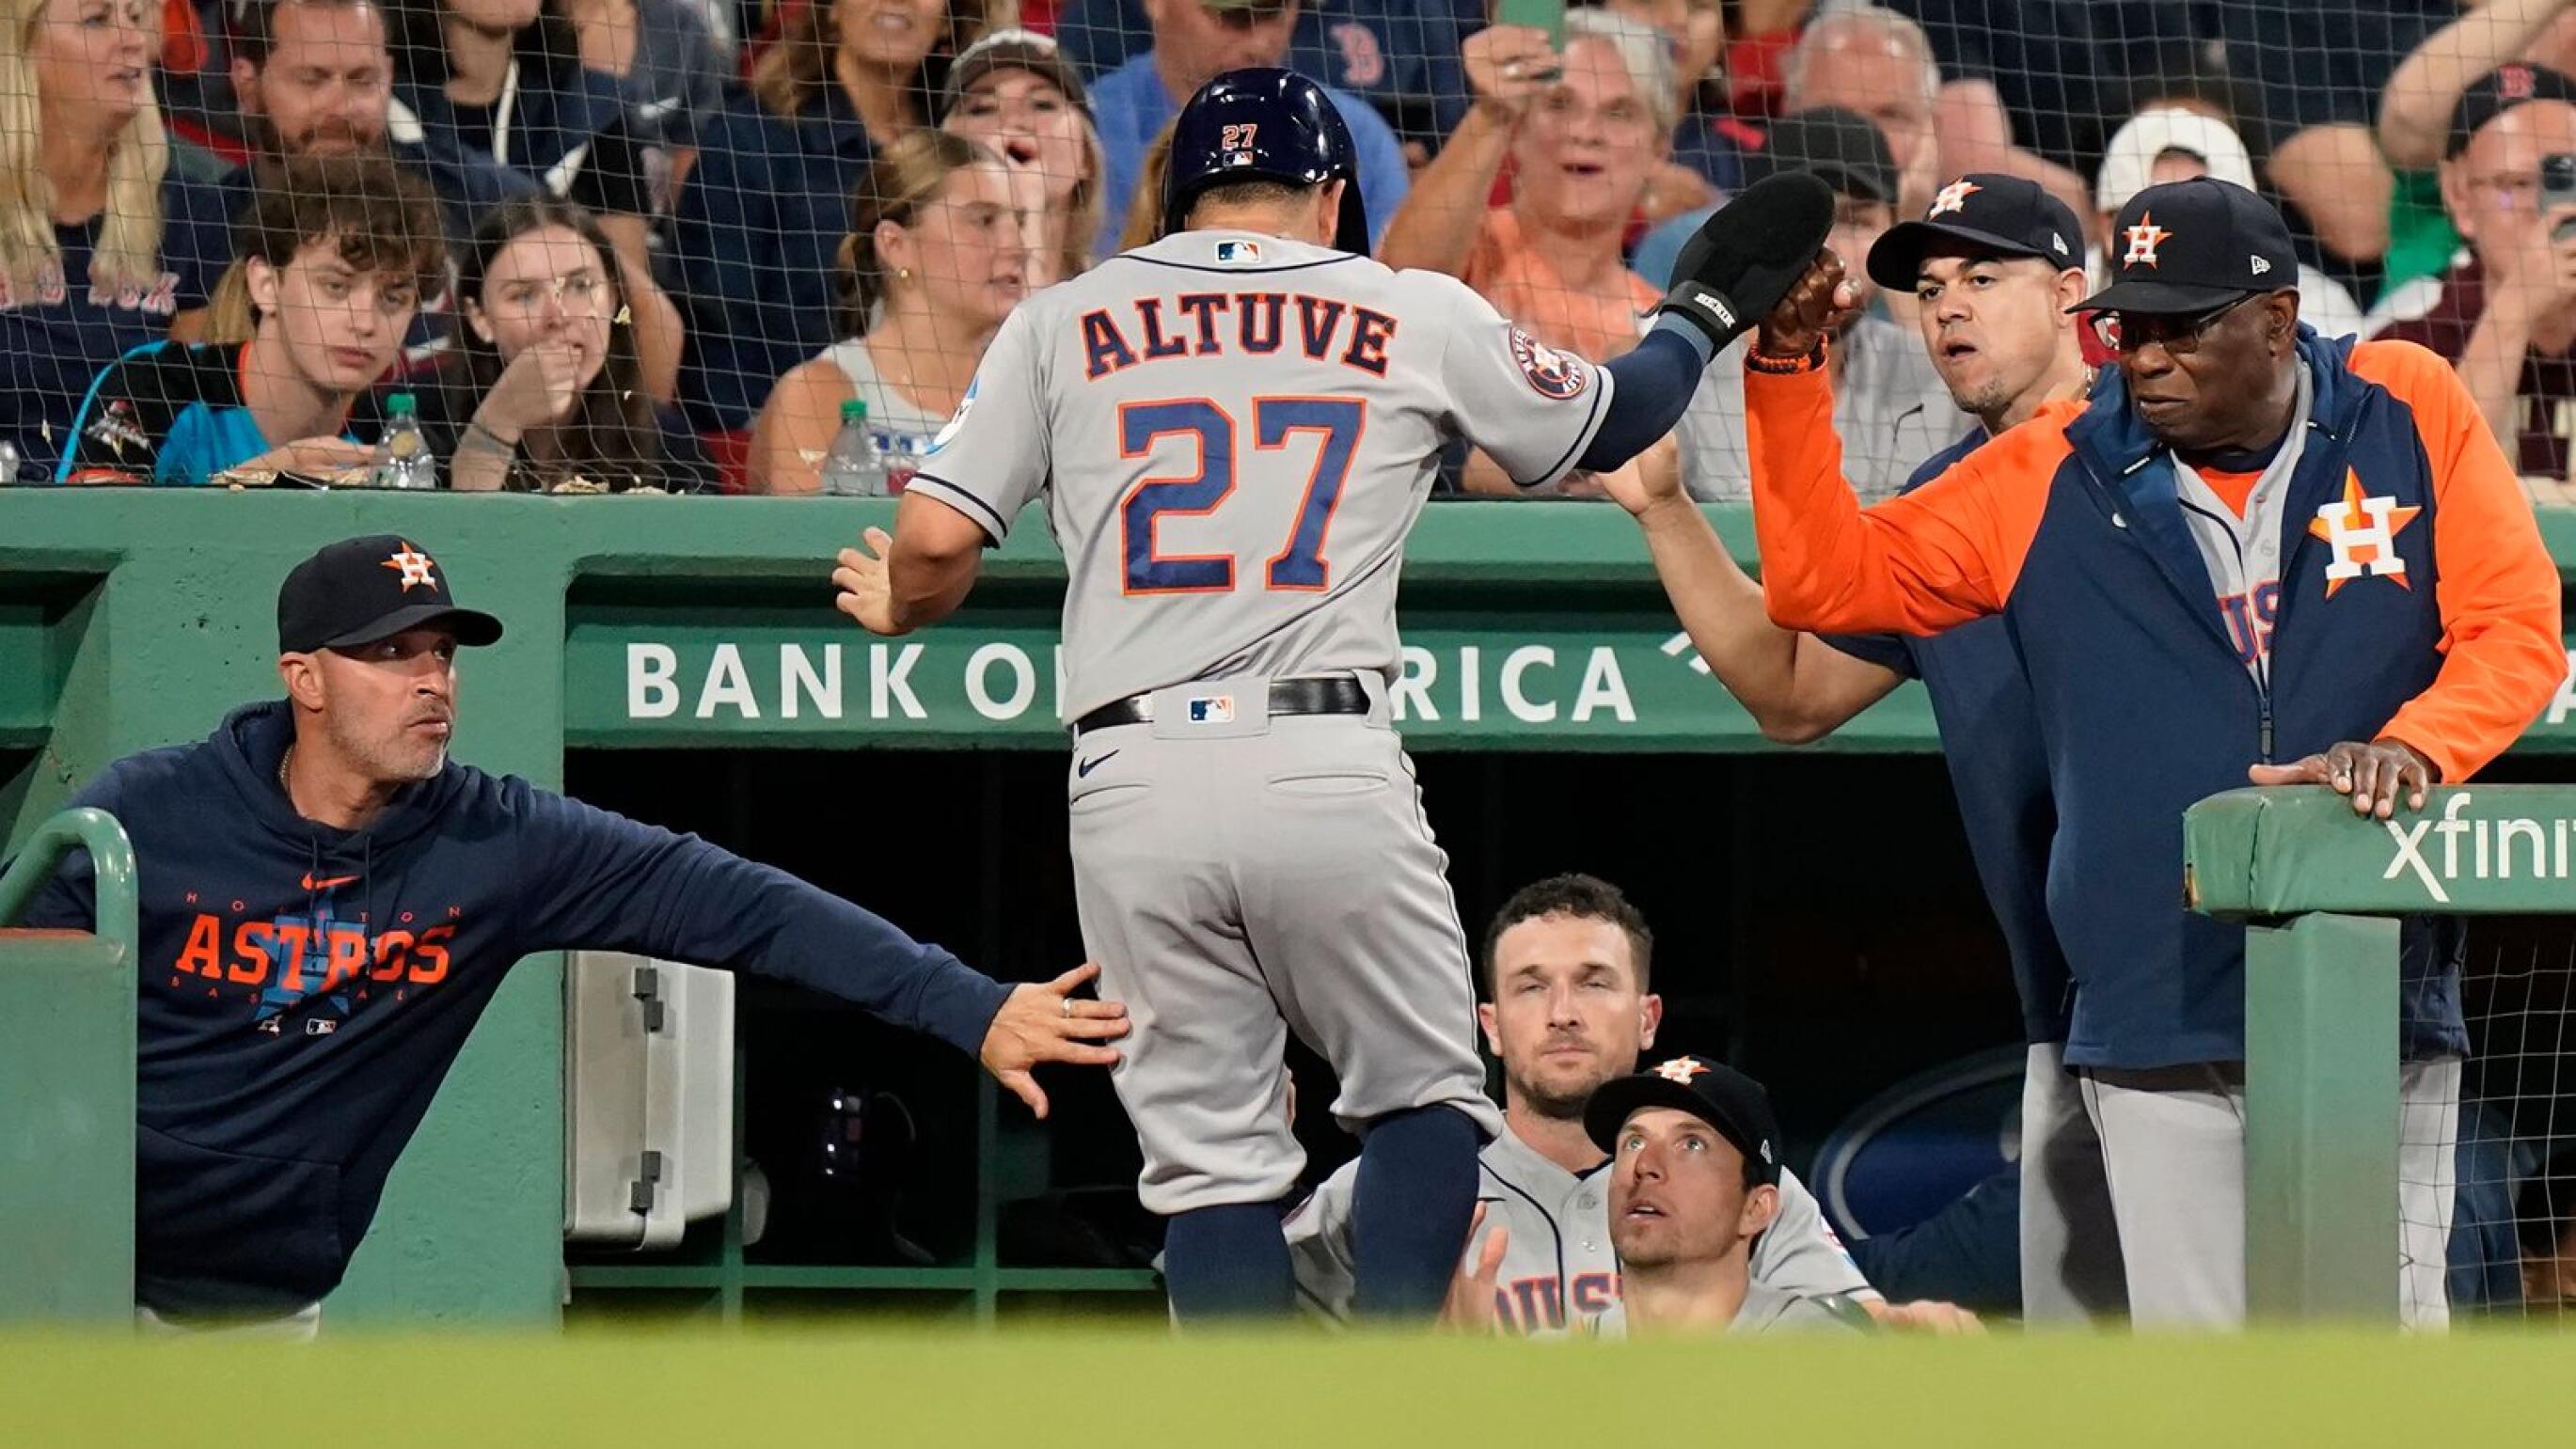 Astros' Jose Altuve hits 3 homers in 3 innings vs Rangers